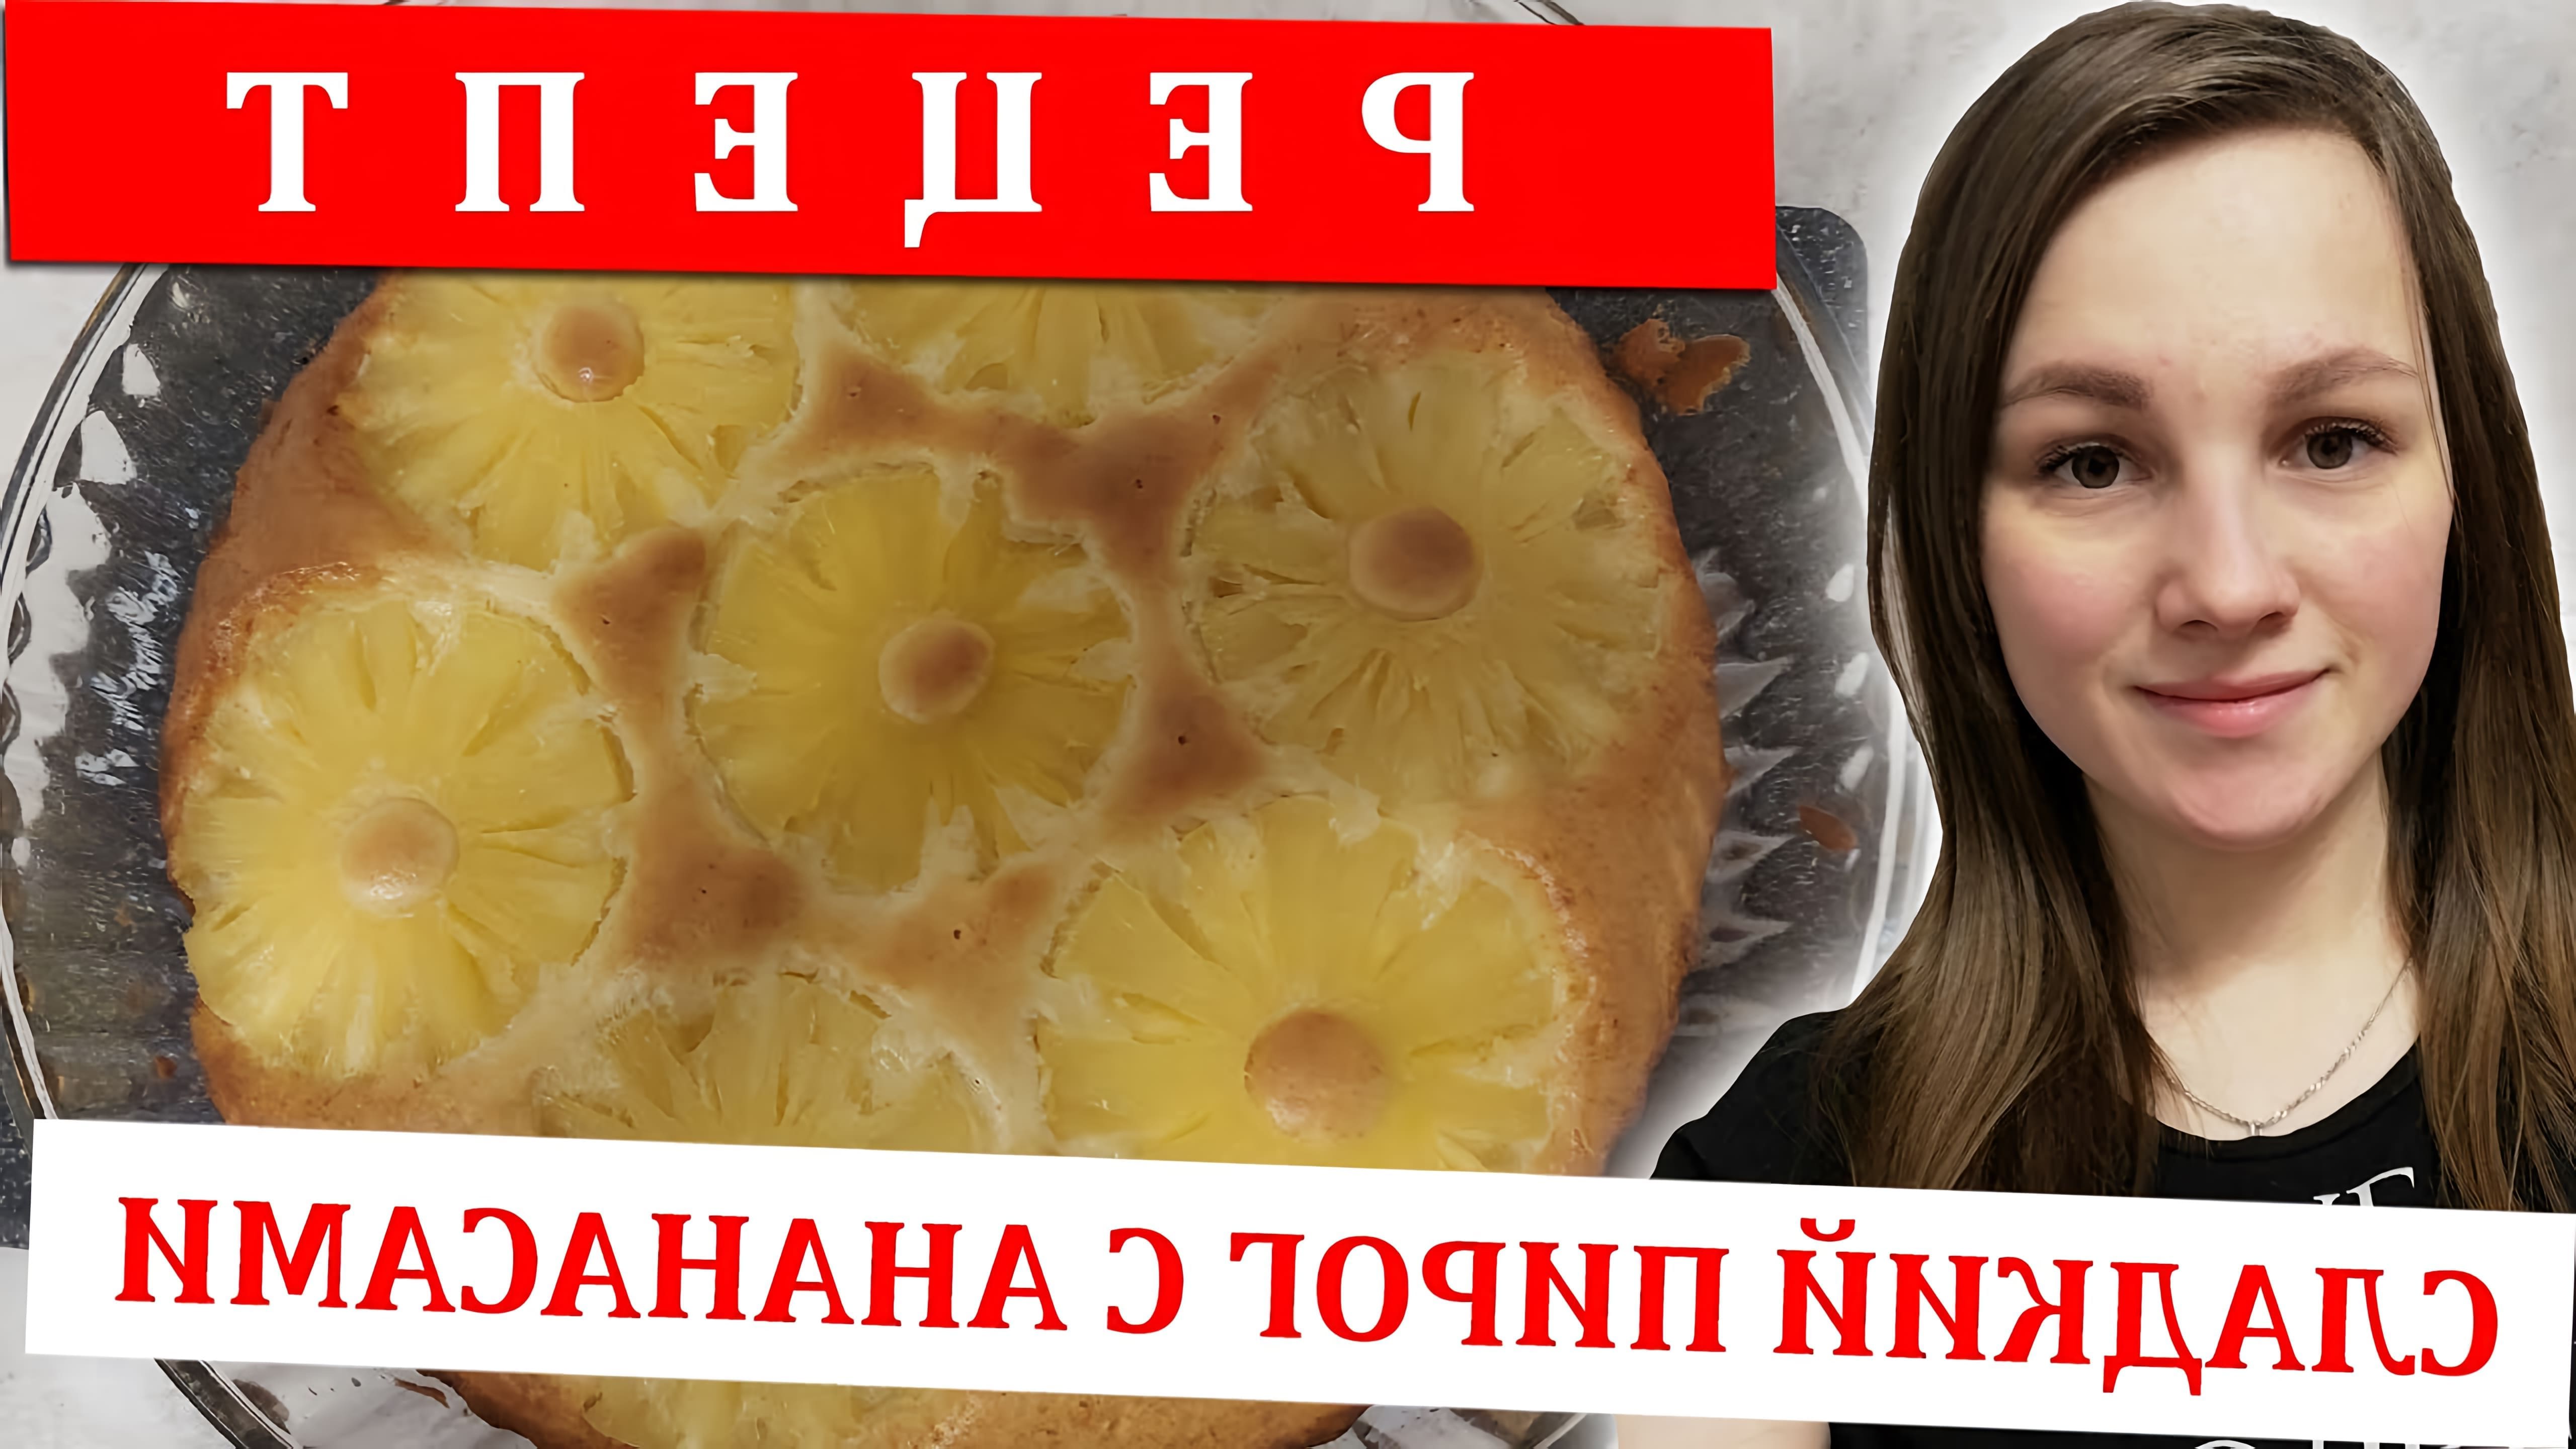 В этом видео-ролике будет представлен рецепт приготовления пирога с ананасами консервированными в духовке